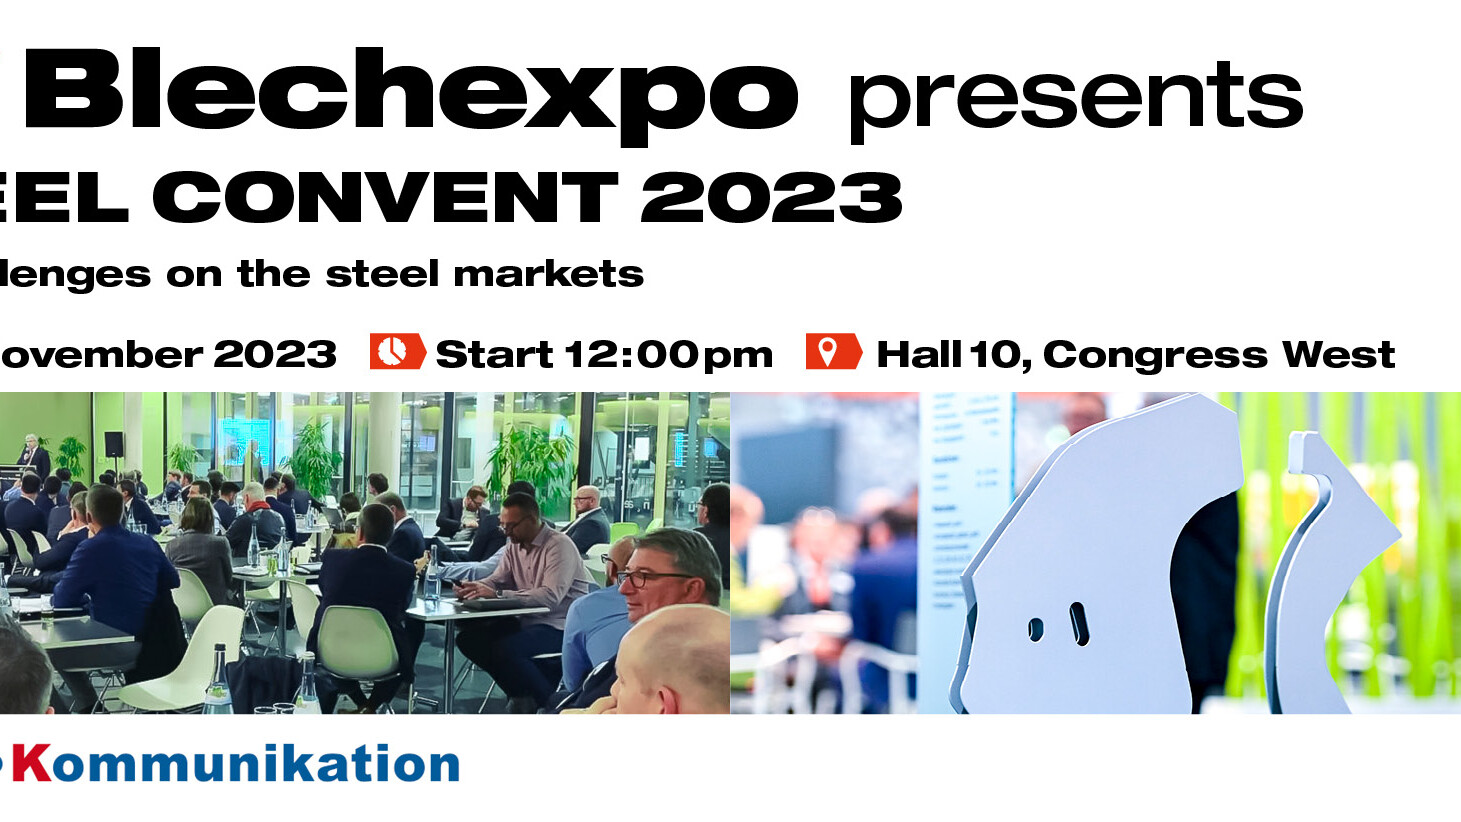 Blechexpo Internationale Fachmesse für Blechbearbeitung Blechexpo Stahlkonvent 2023 1920x822 website 01 en web uai